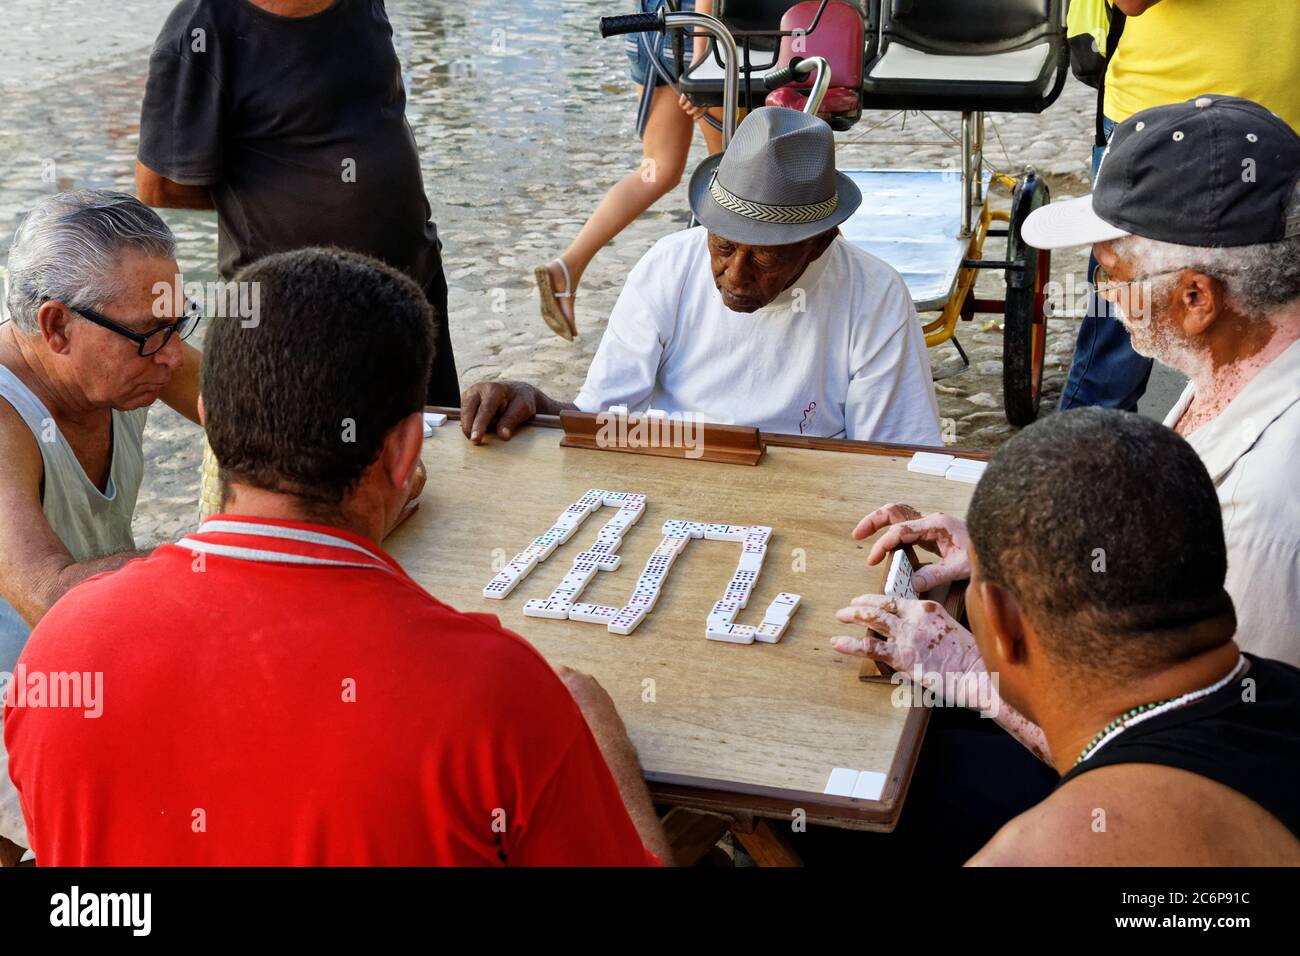 TRINIDAD,CUBA-NOV 23,2013: Vieil homme dans la rue de Trinidad jouant au domino, qui est un jeu typique pour les Cubains qui se rassemblent souvent pour jouer en plein air Banque D'Images